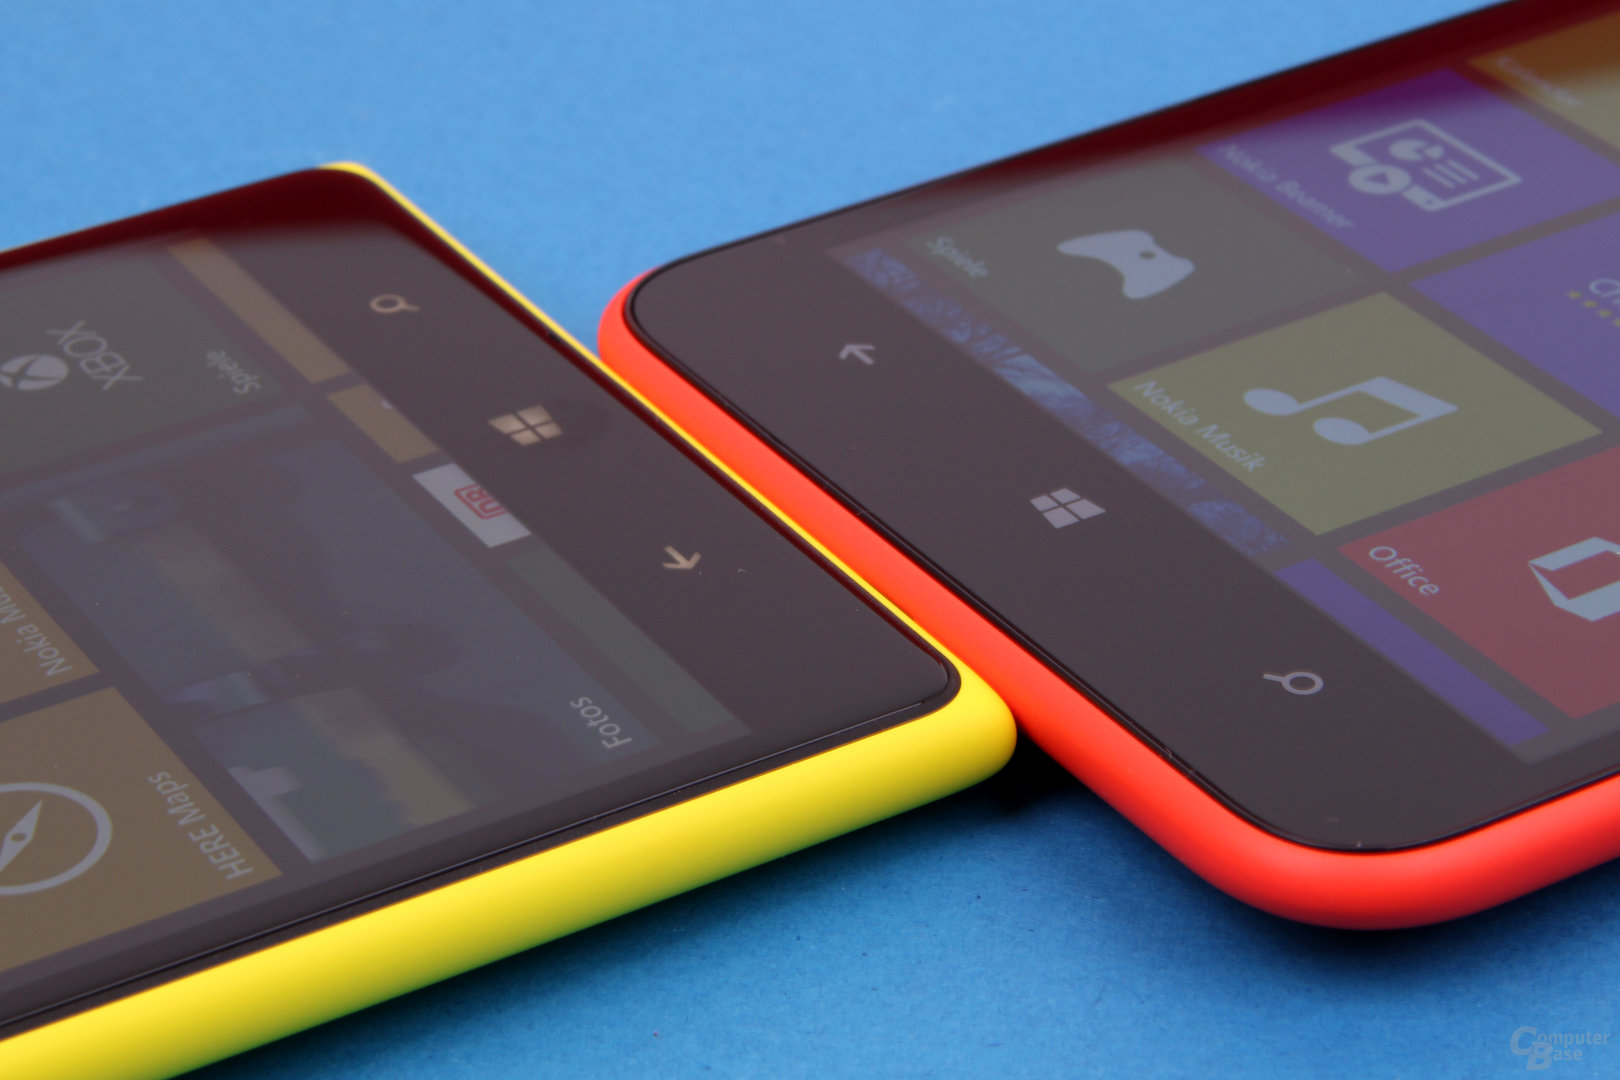 Aus eckig mach rund: Das Lumia 1320 liegt angenehmer in der Hand